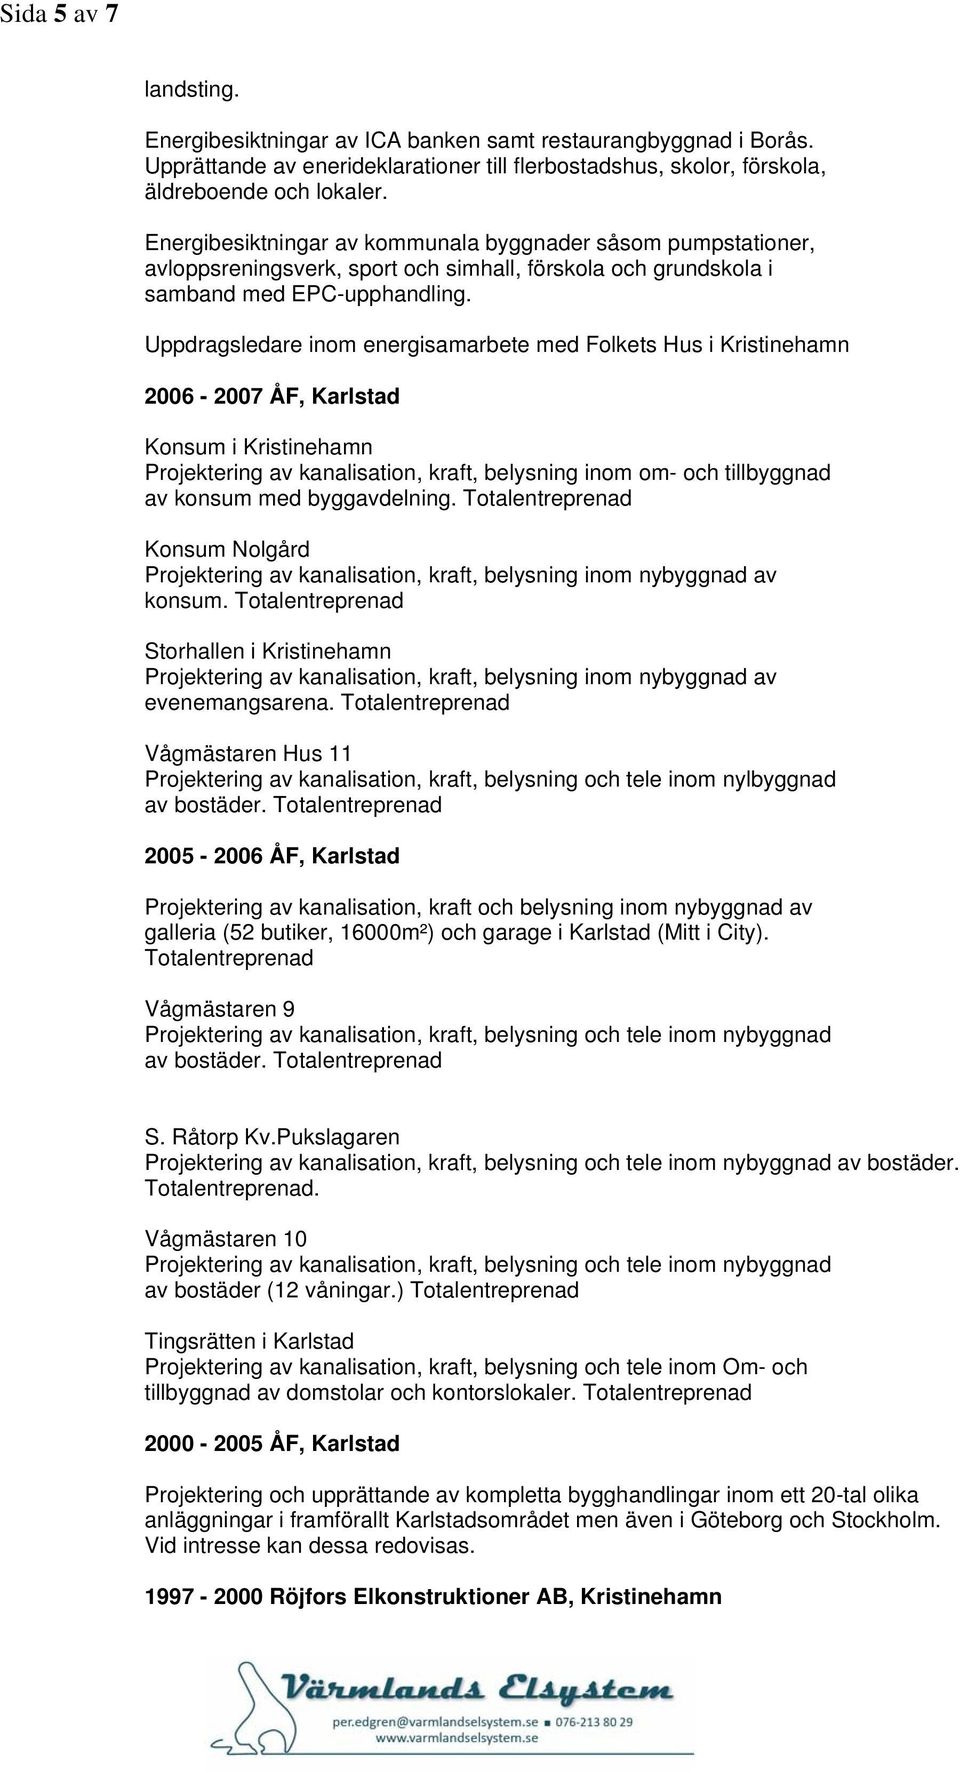 Uppdragsledare inom energisamarbete med Folkets Hus i Kristinehamn 2006-2007 ÅF, Karlstad Konsum i Kristinehamn Projektering av kanalisation, kraft, belysning inom om- och tillbyggnad av konsum med